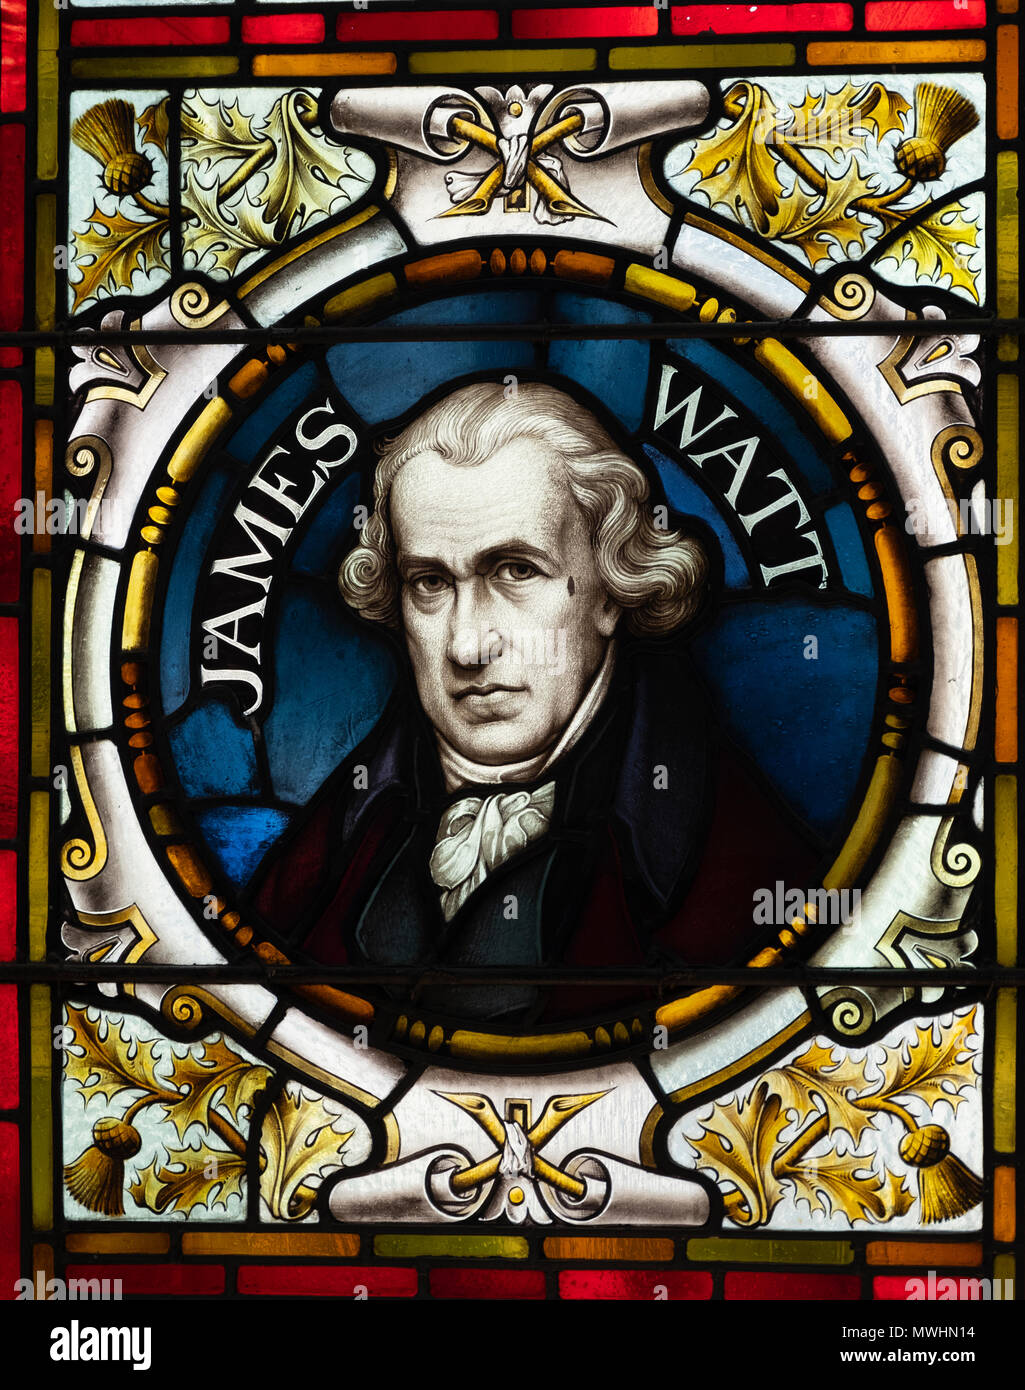 Vitrail montrant James Watt à l'McManus art gallery and museum à Dundee, Écosse, Royaume-Uni, Tayside Banque D'Images